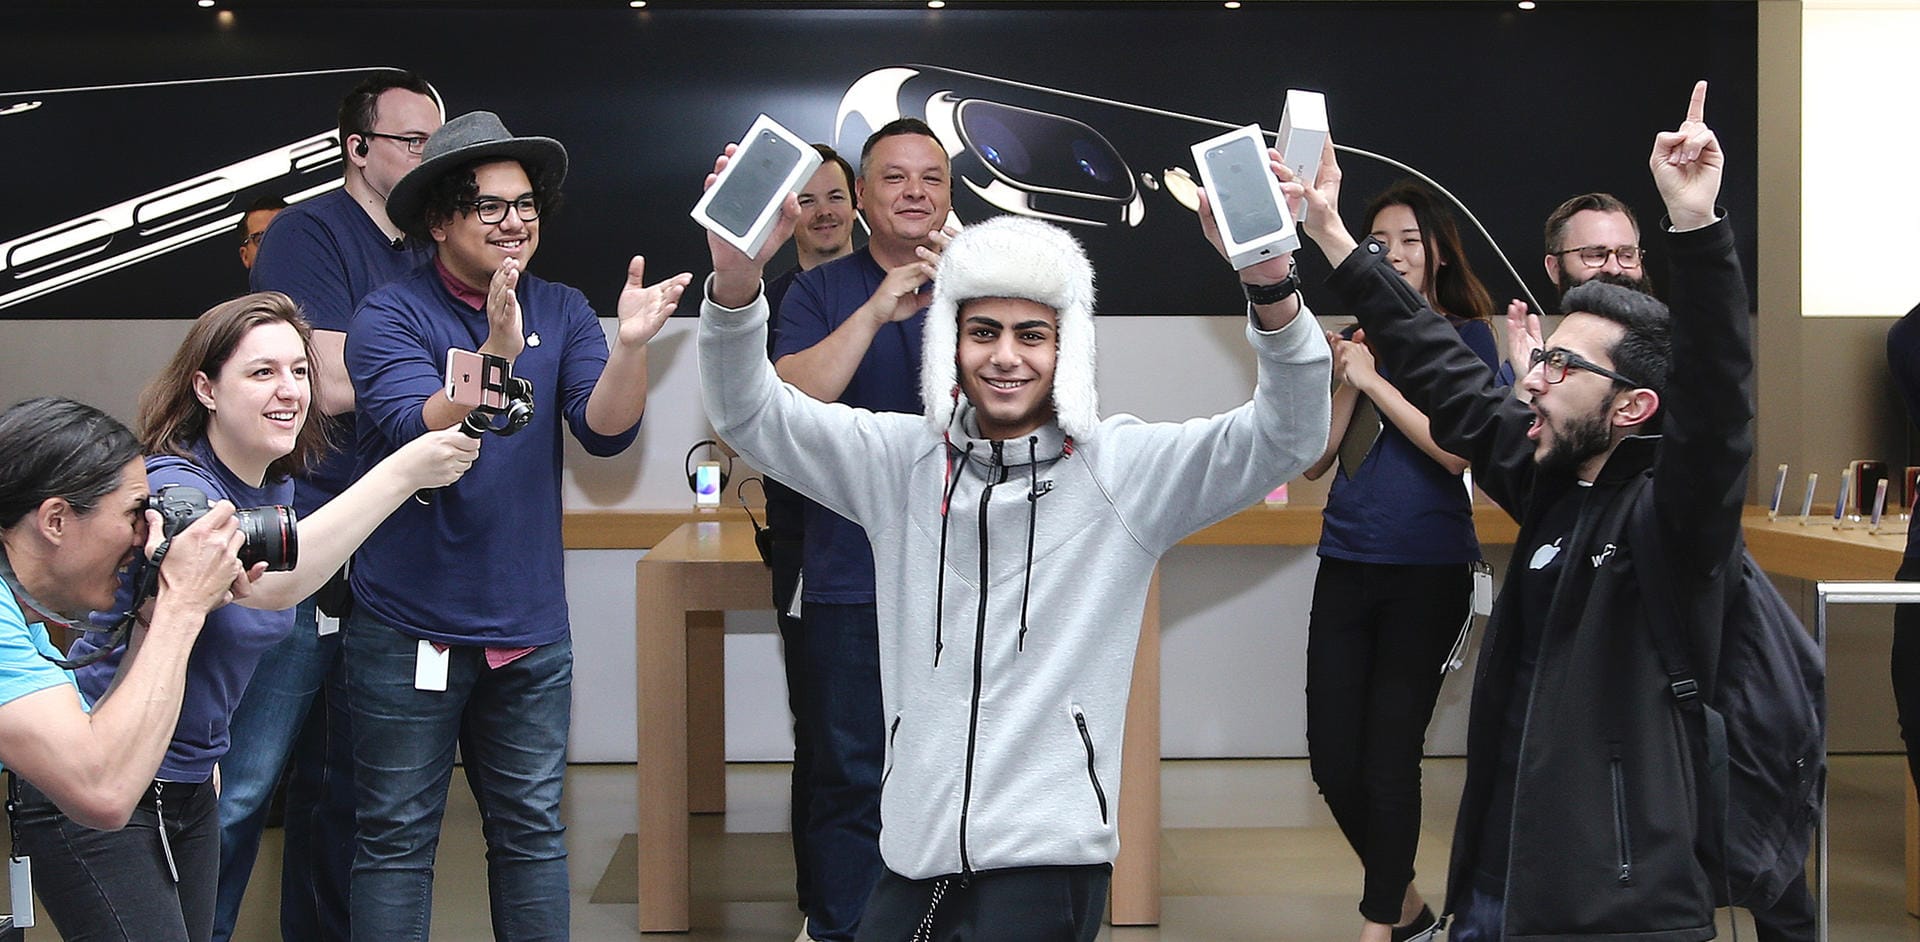 Der weltweit erste Käufer des iPhone 7 ist aber der 17-jährige Australier Bishoy Behman.